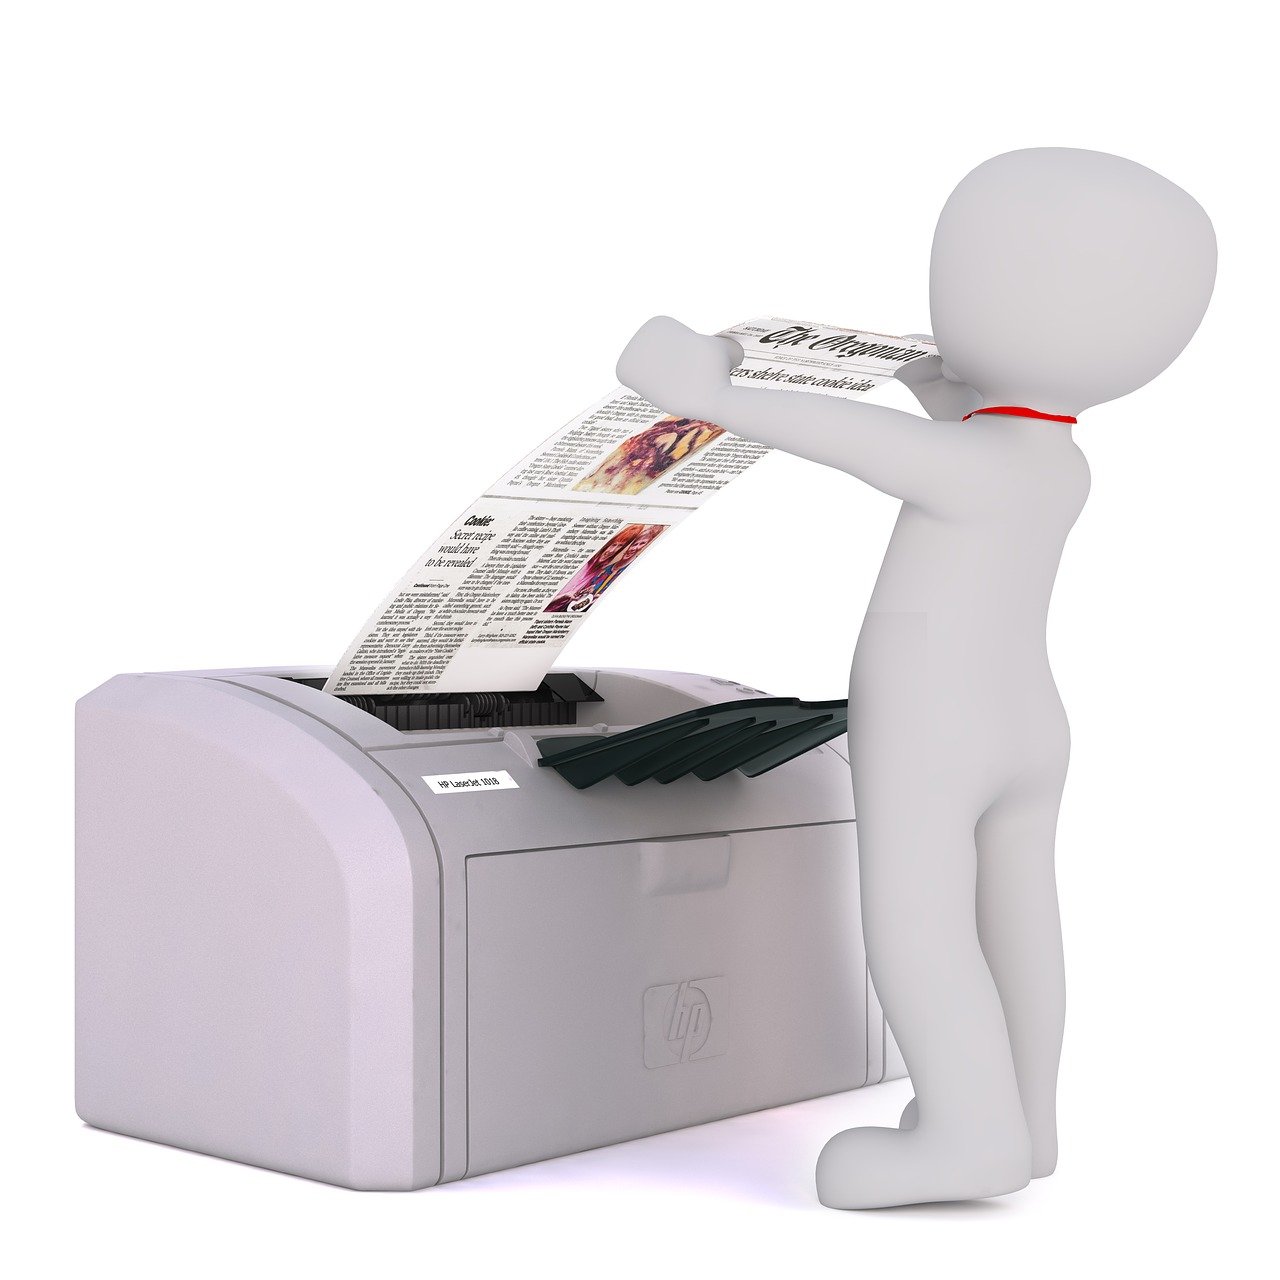 Serwis drukarek, czyli gdzie zadbają o Twój sprzęt